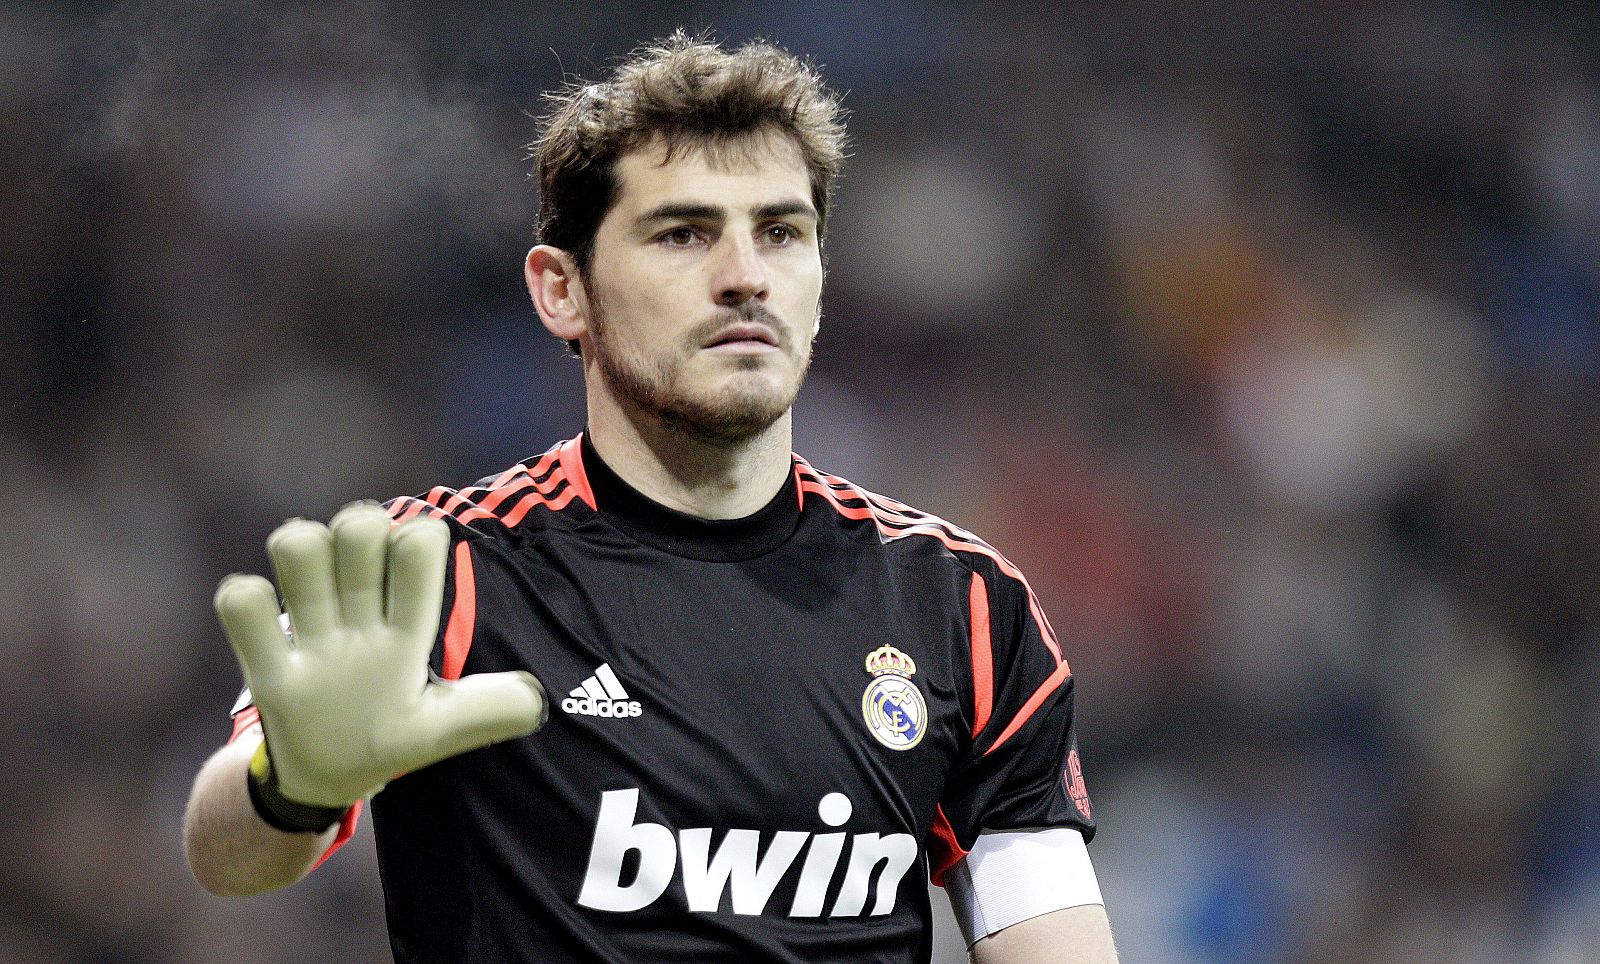 El portero del Real Madrid Iker Casillas, durante el partido de vuelta de los octavos de final de la Copa del Rey ante el Celta de Vigo.